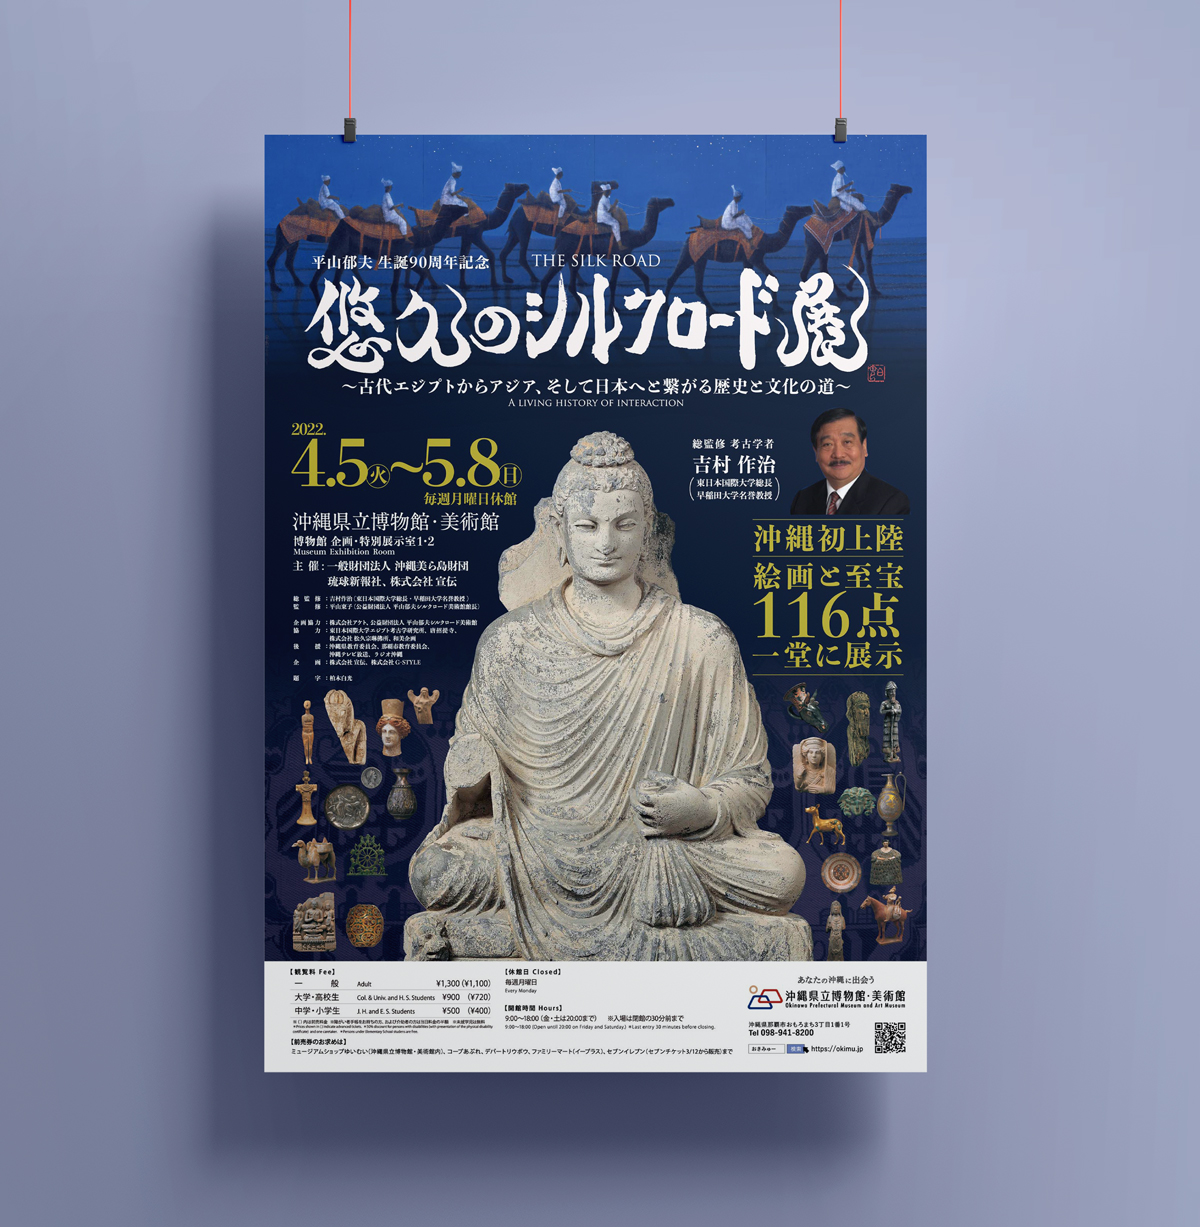 「悠久のシルクロード展〜古代エジプトからアジア、そして日本へとつながる歴史と文化の道〜」